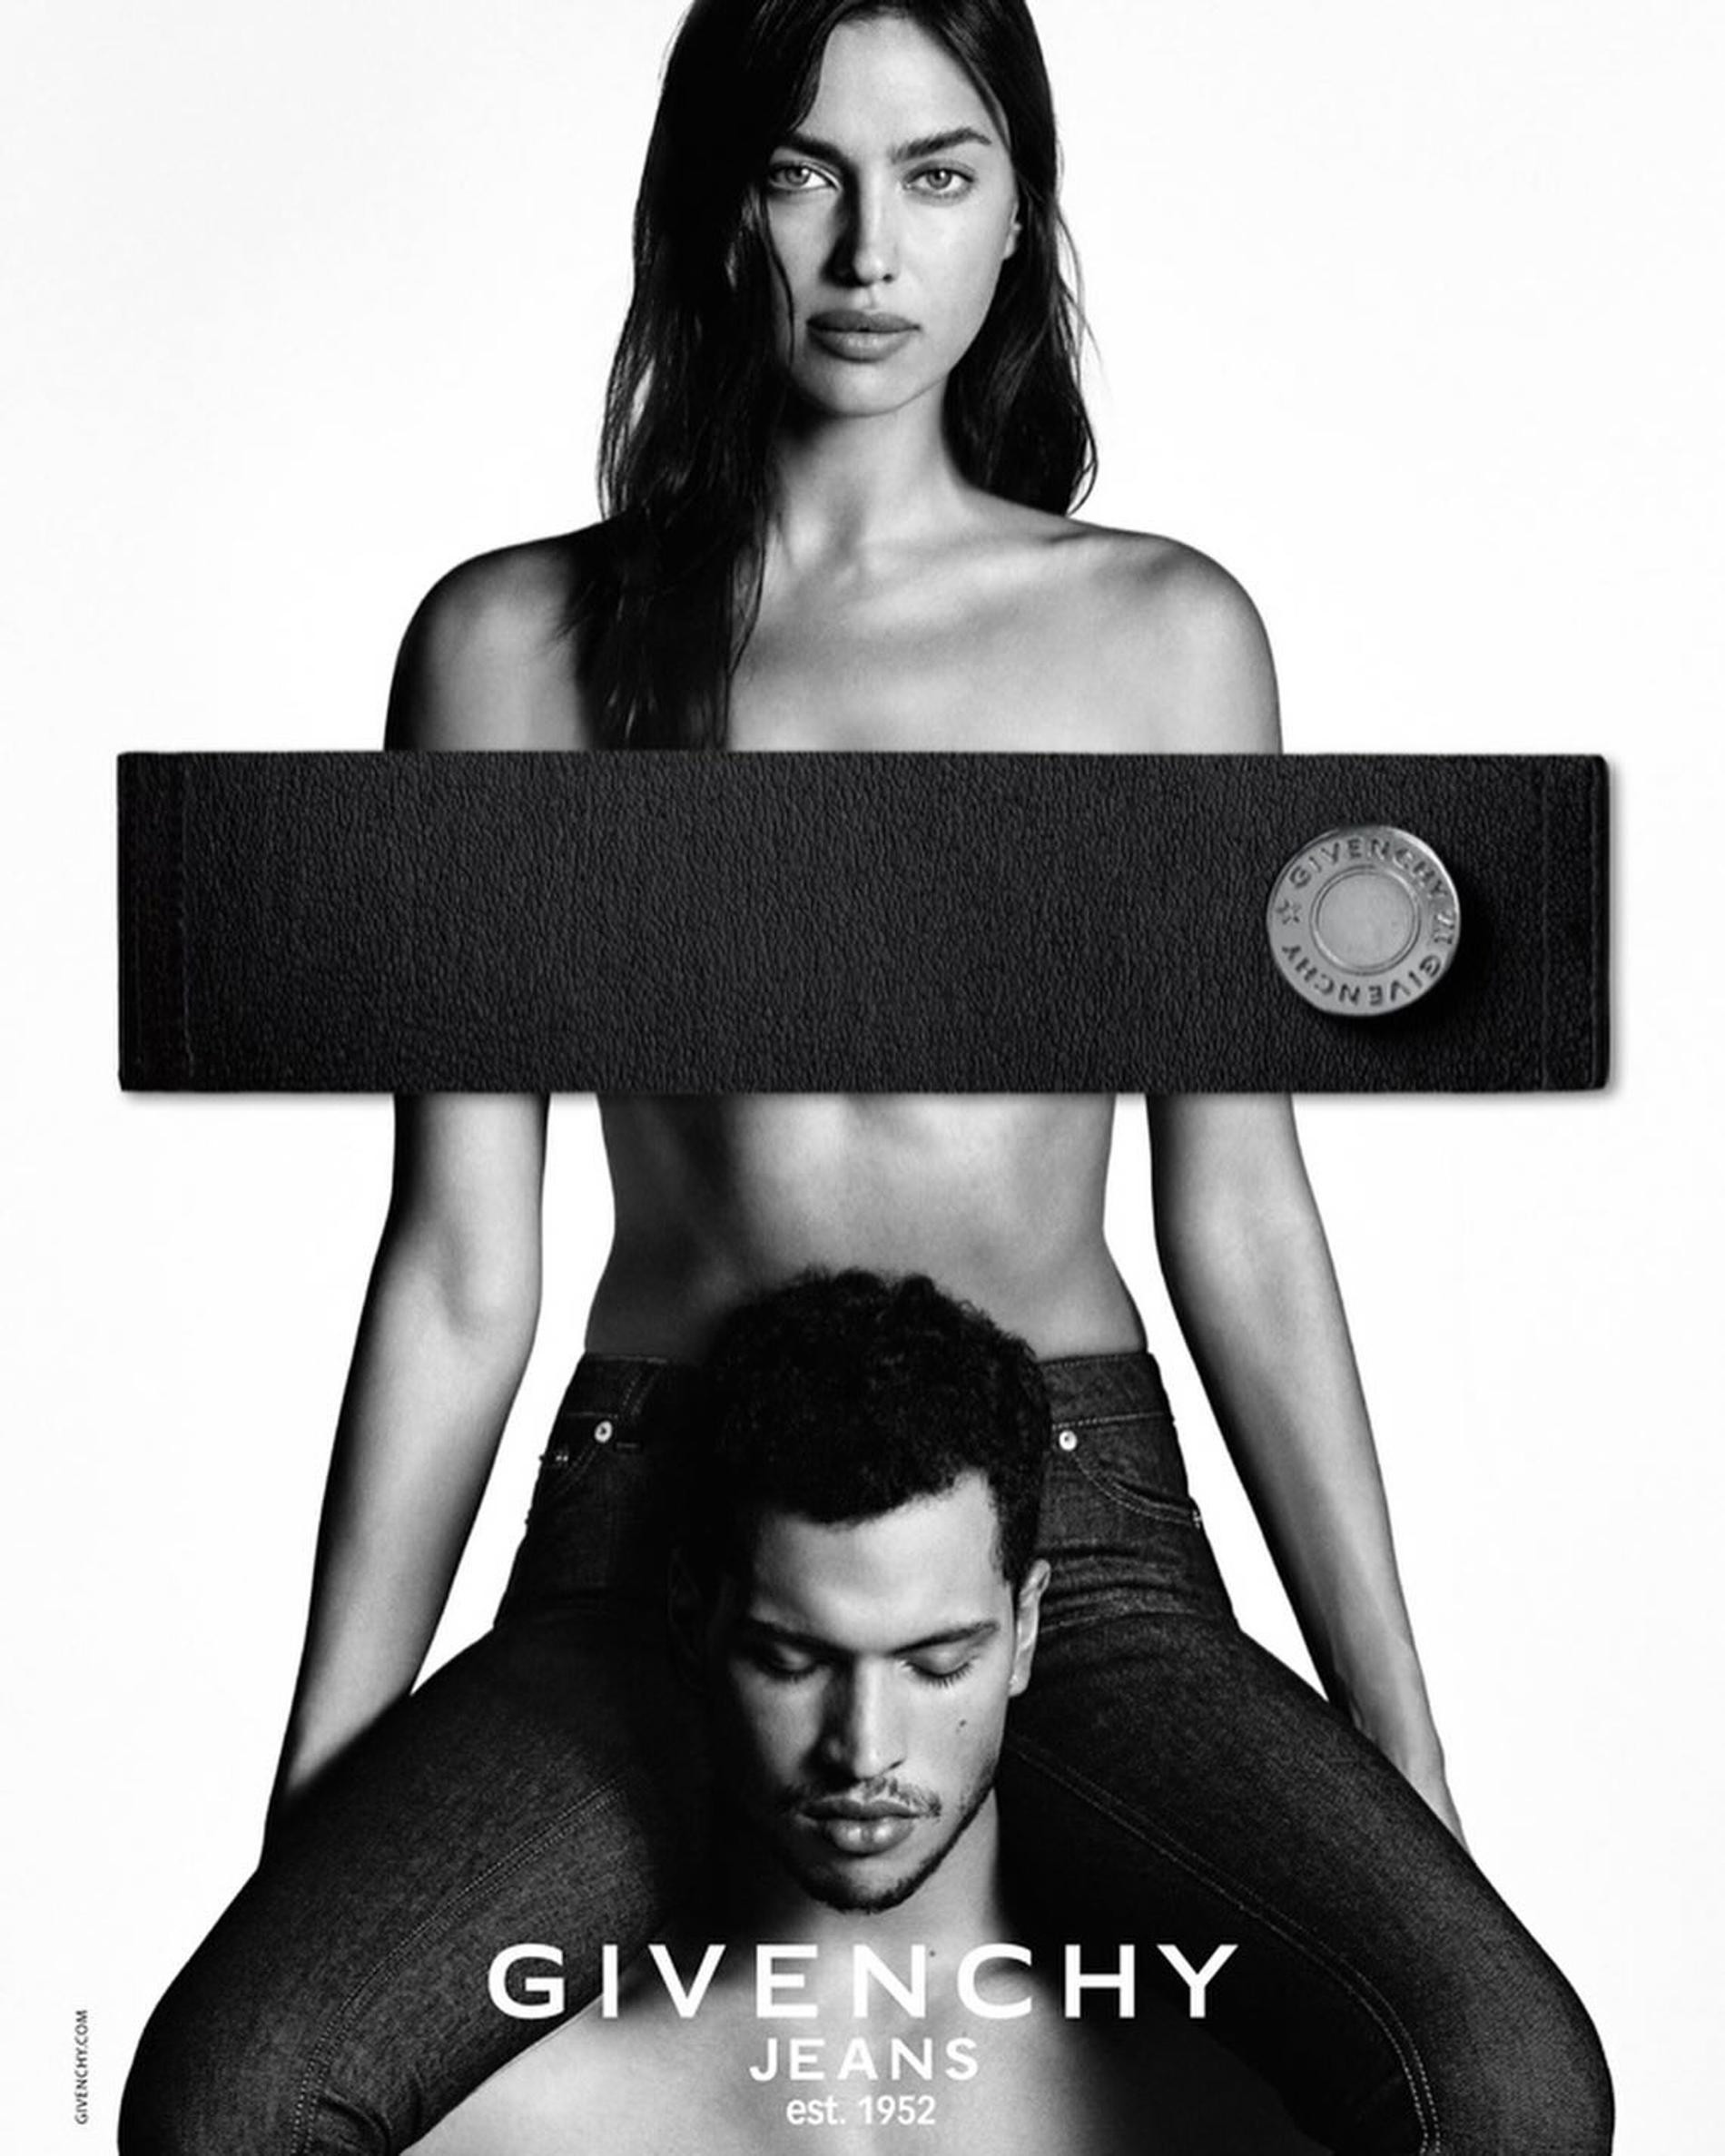 Иринай Шейк в рекламной кампании Givenchy. Фото: Инстаграм* @verytisci